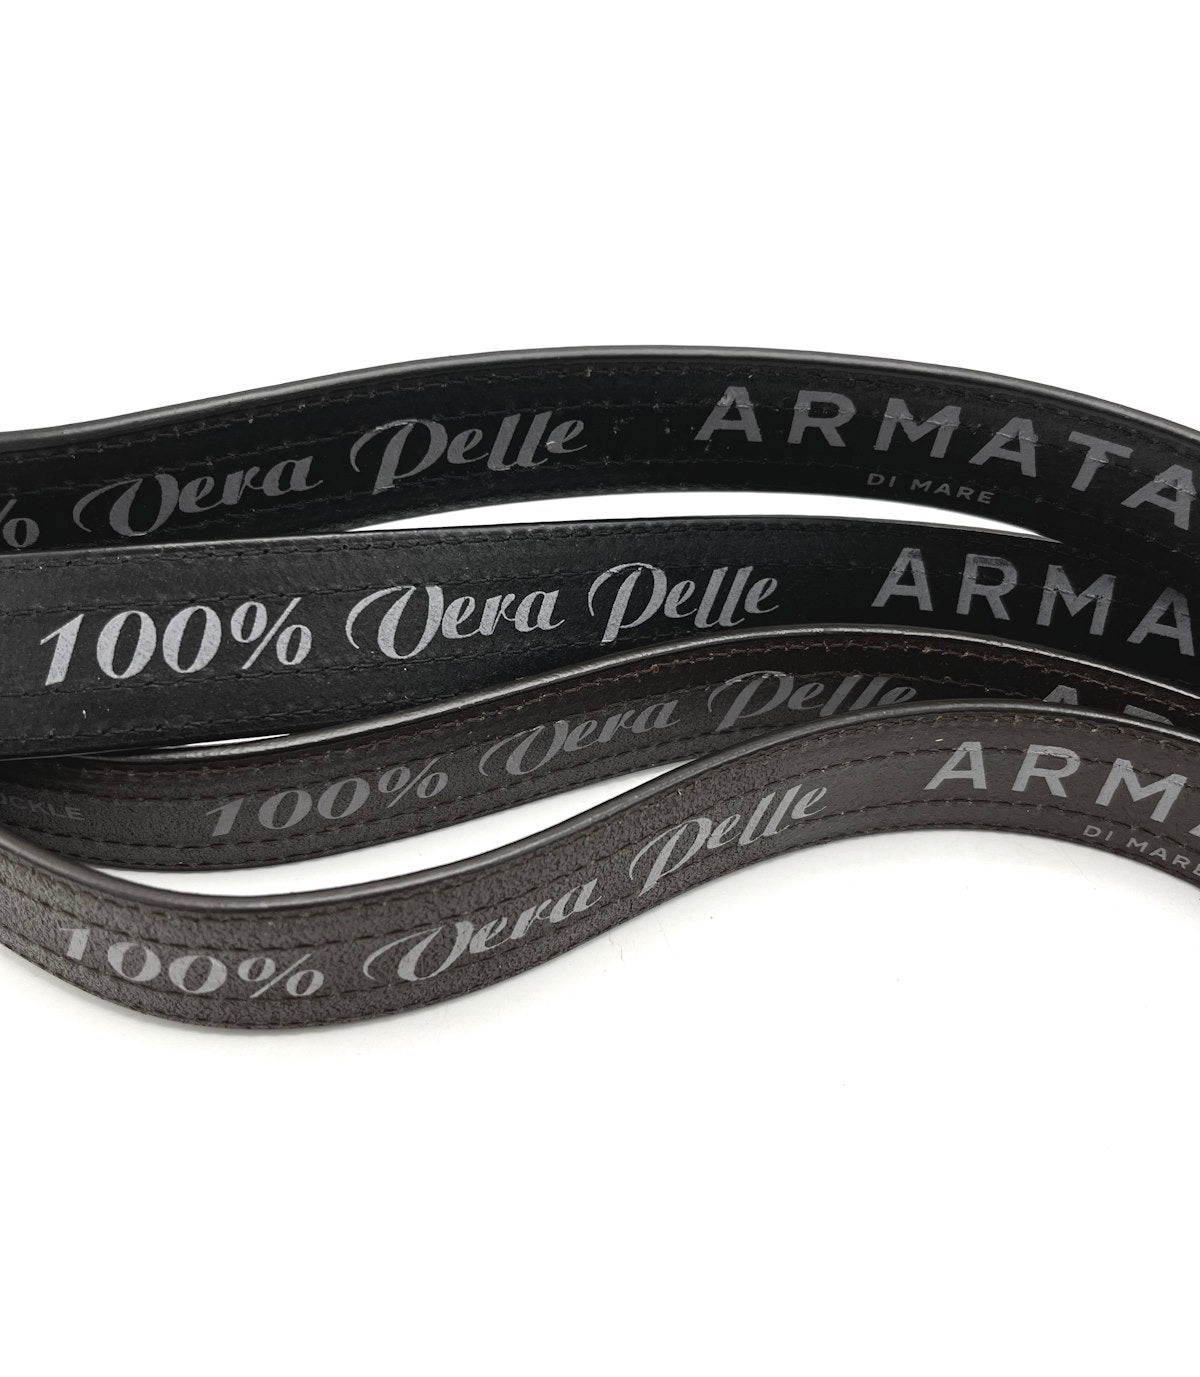 Cintura in vera pelle, Armata di mare, art. IDK576/35.425